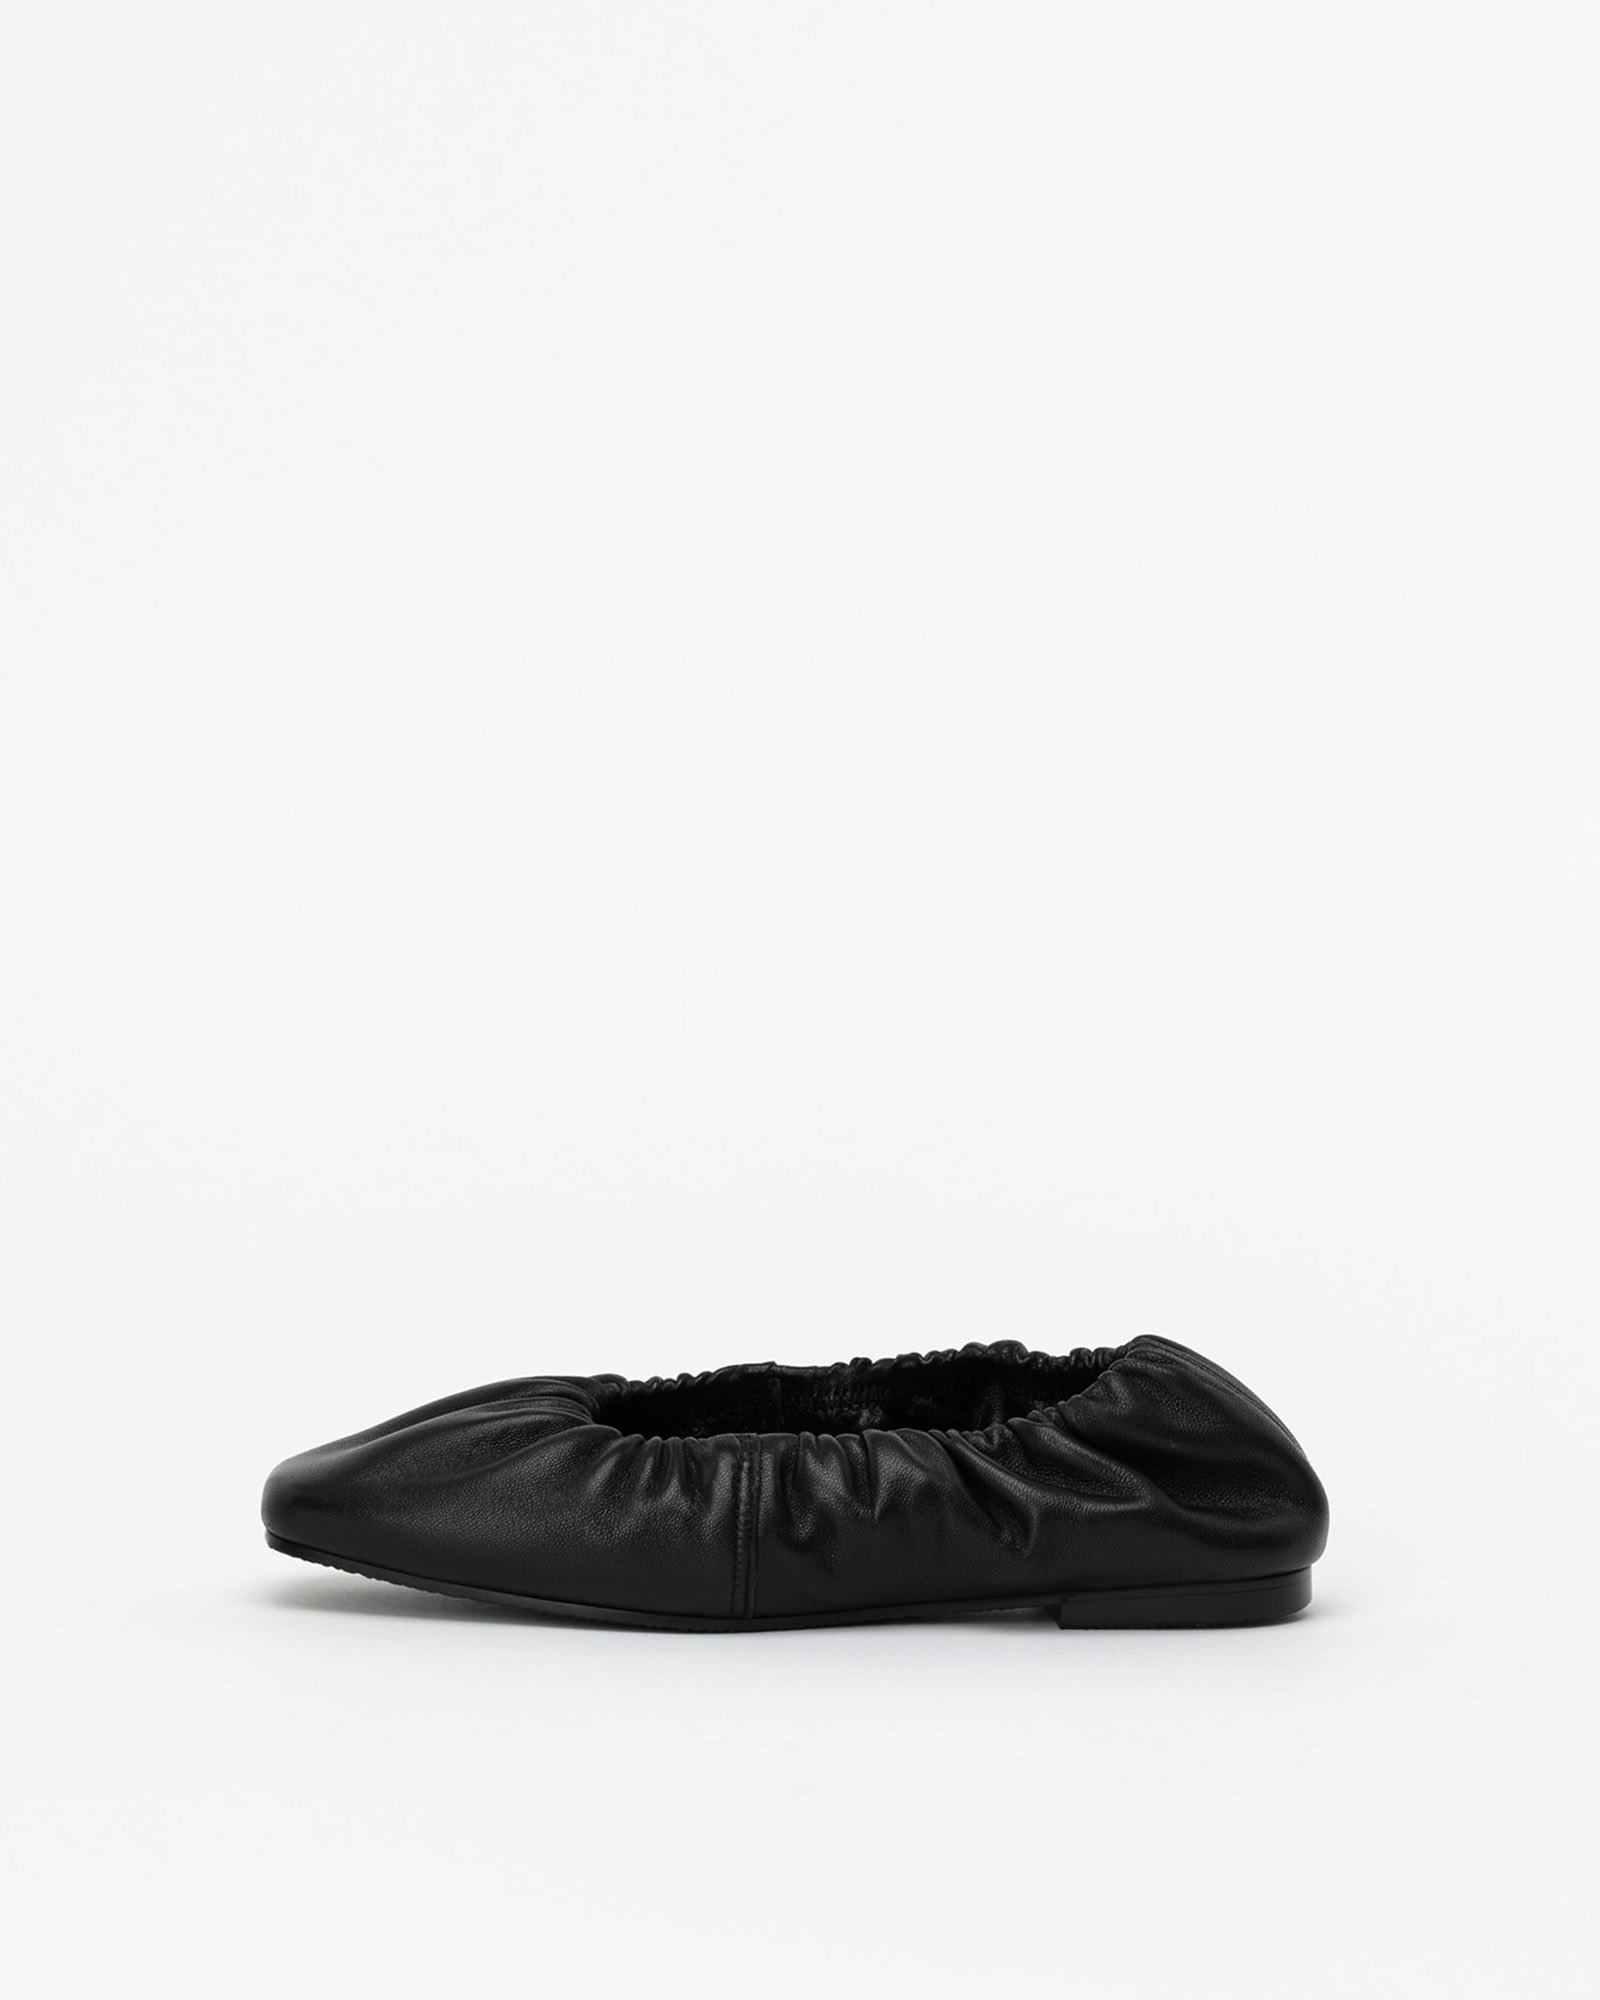 Lucerne Soft Flat Shoes in Black